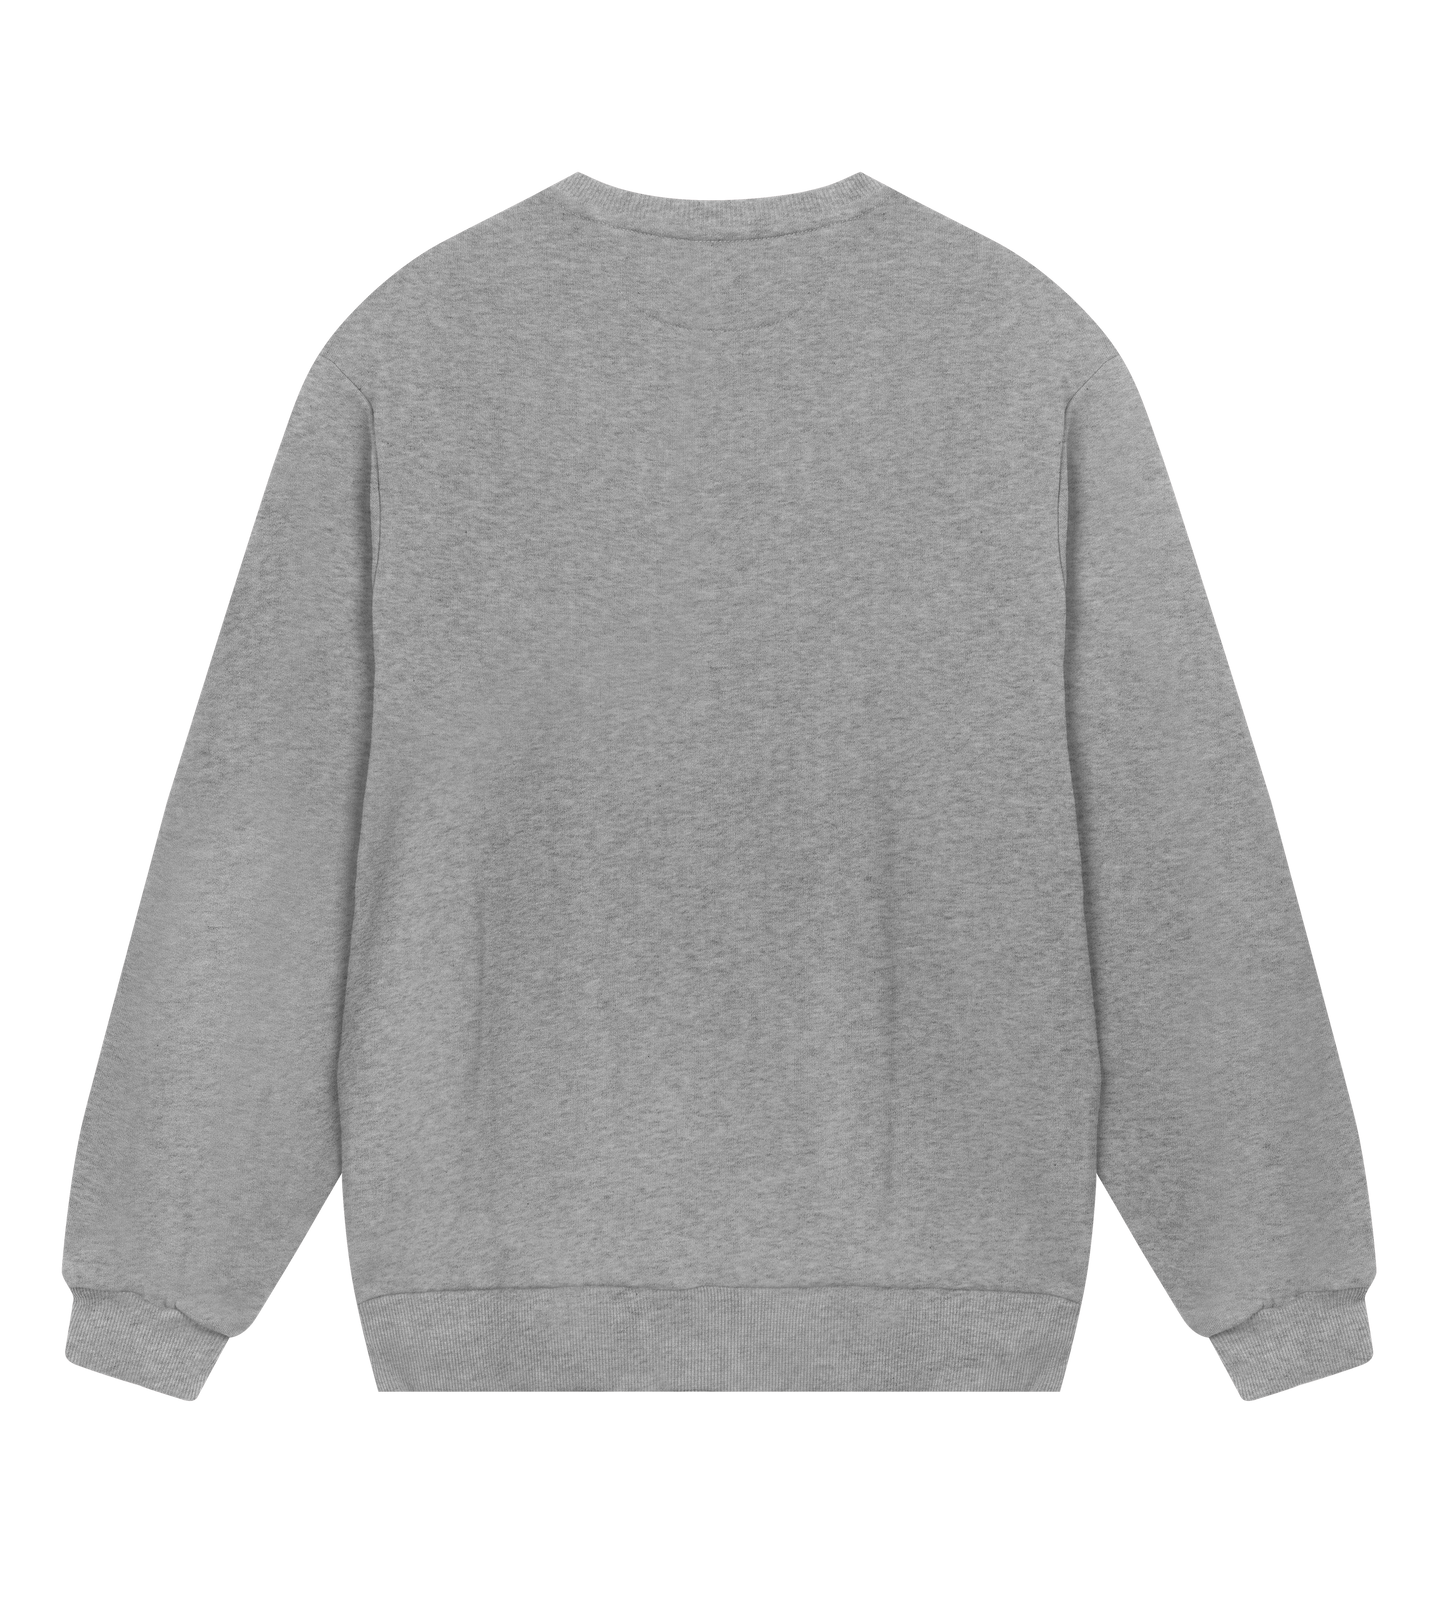 comeherefloyd parallelogram (regular) sweatshirt - men - gray melange